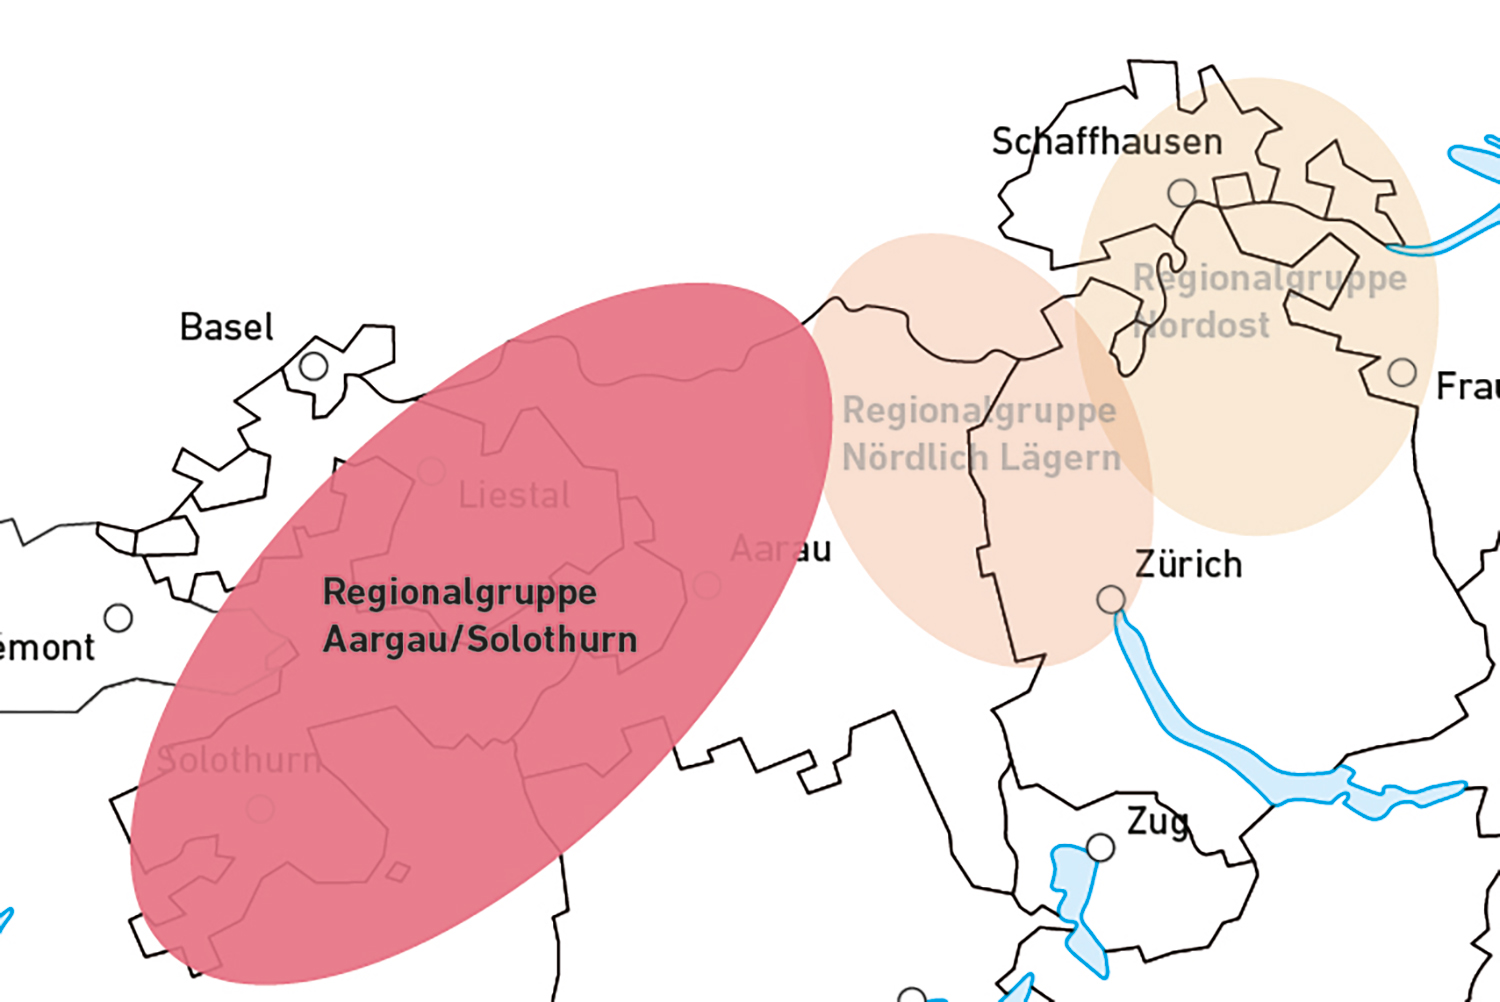 Regionalgruppe Aargau/Solothurn